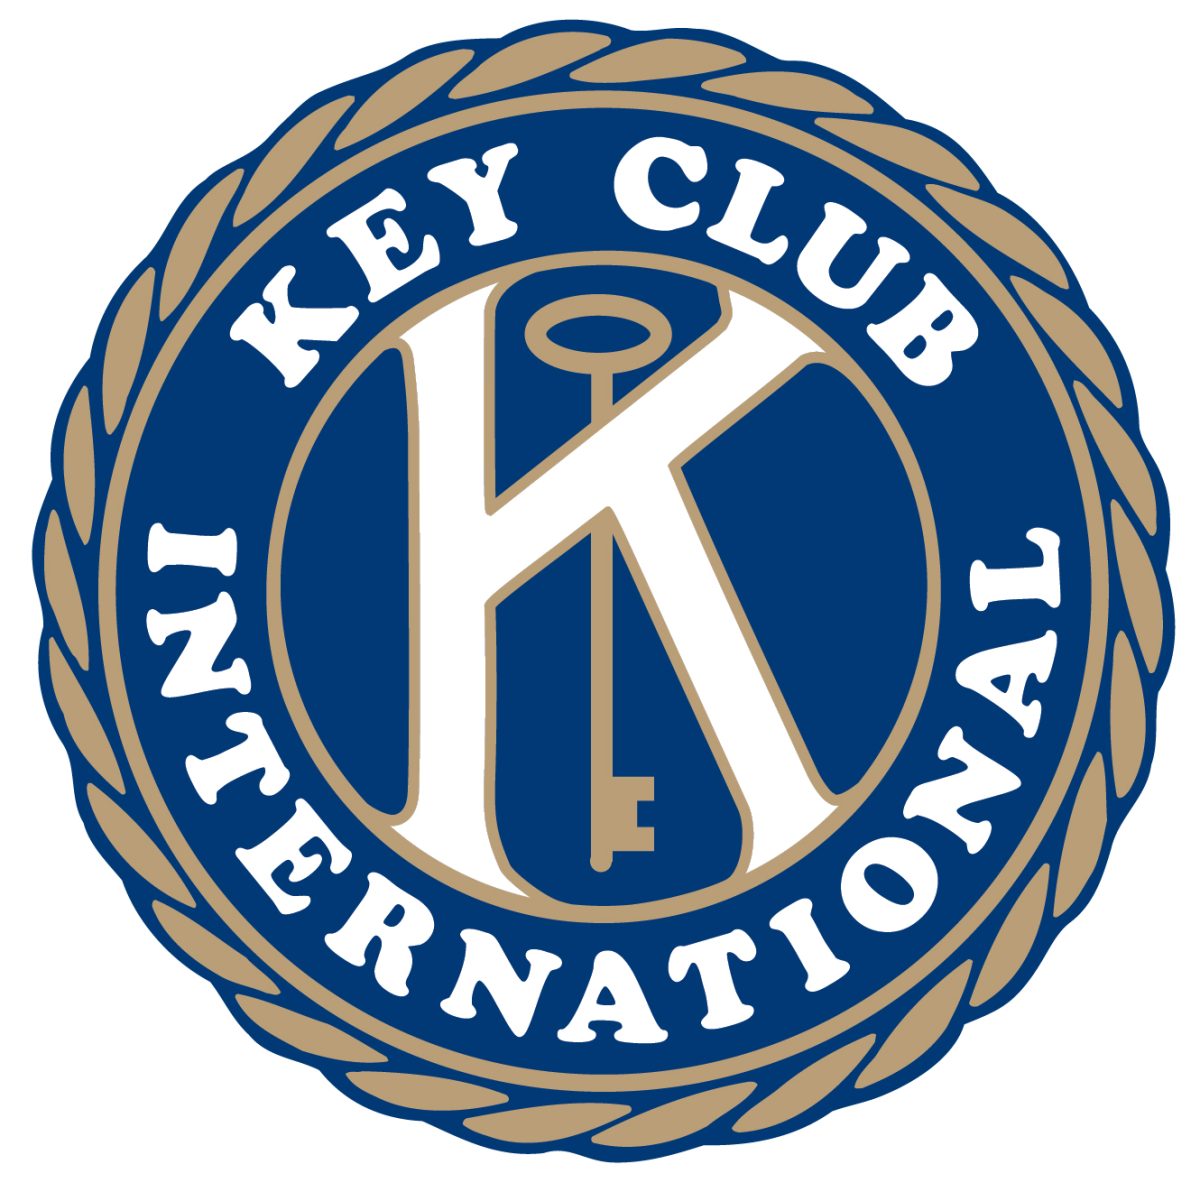 Key+Club+International+logo